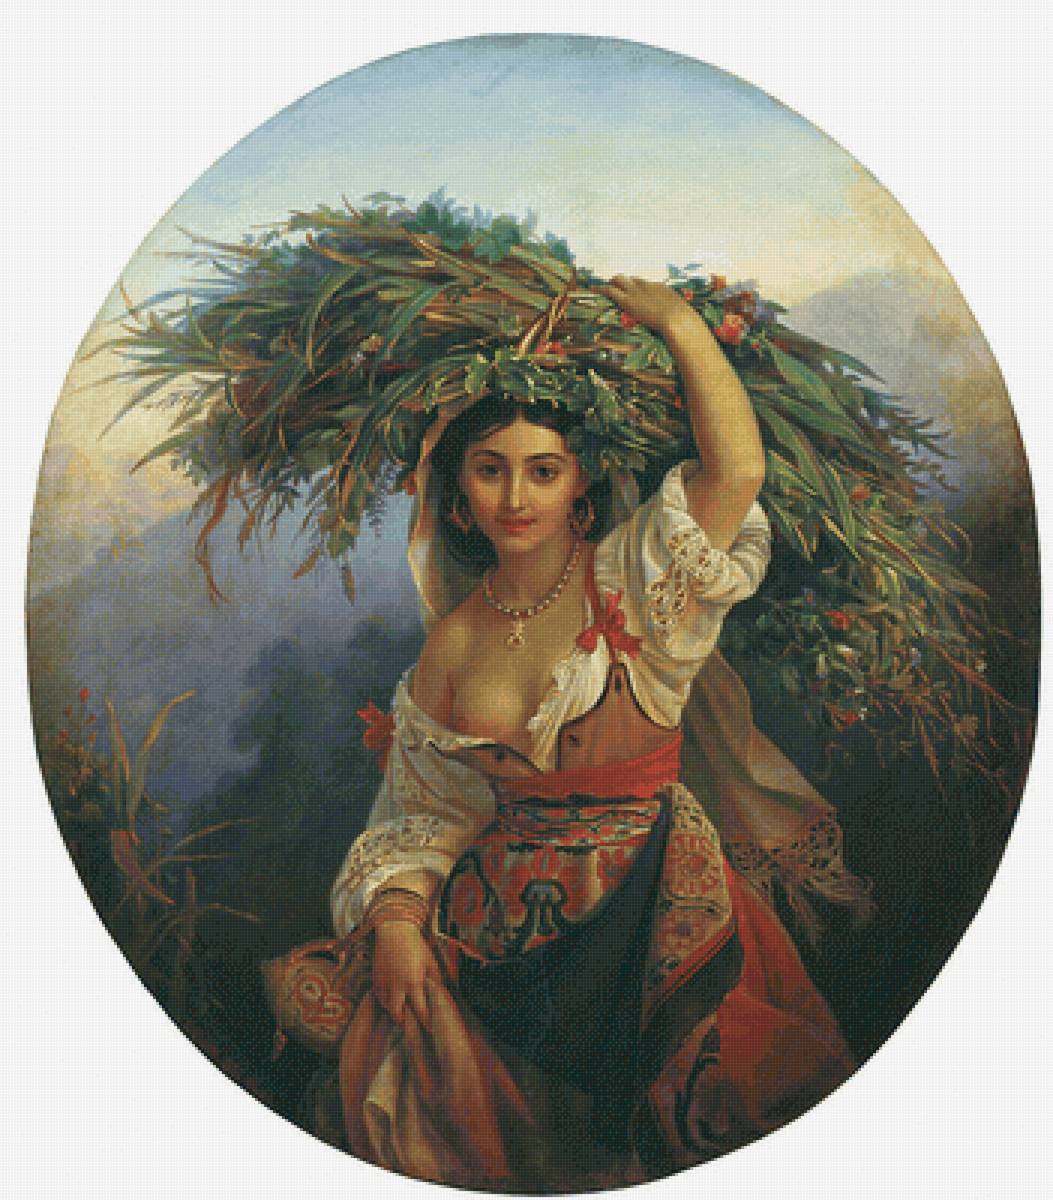 Орлов П.Н. Итальянская девушка с цветами - 19 век, девушка, портрет, живопись - предпросмотр